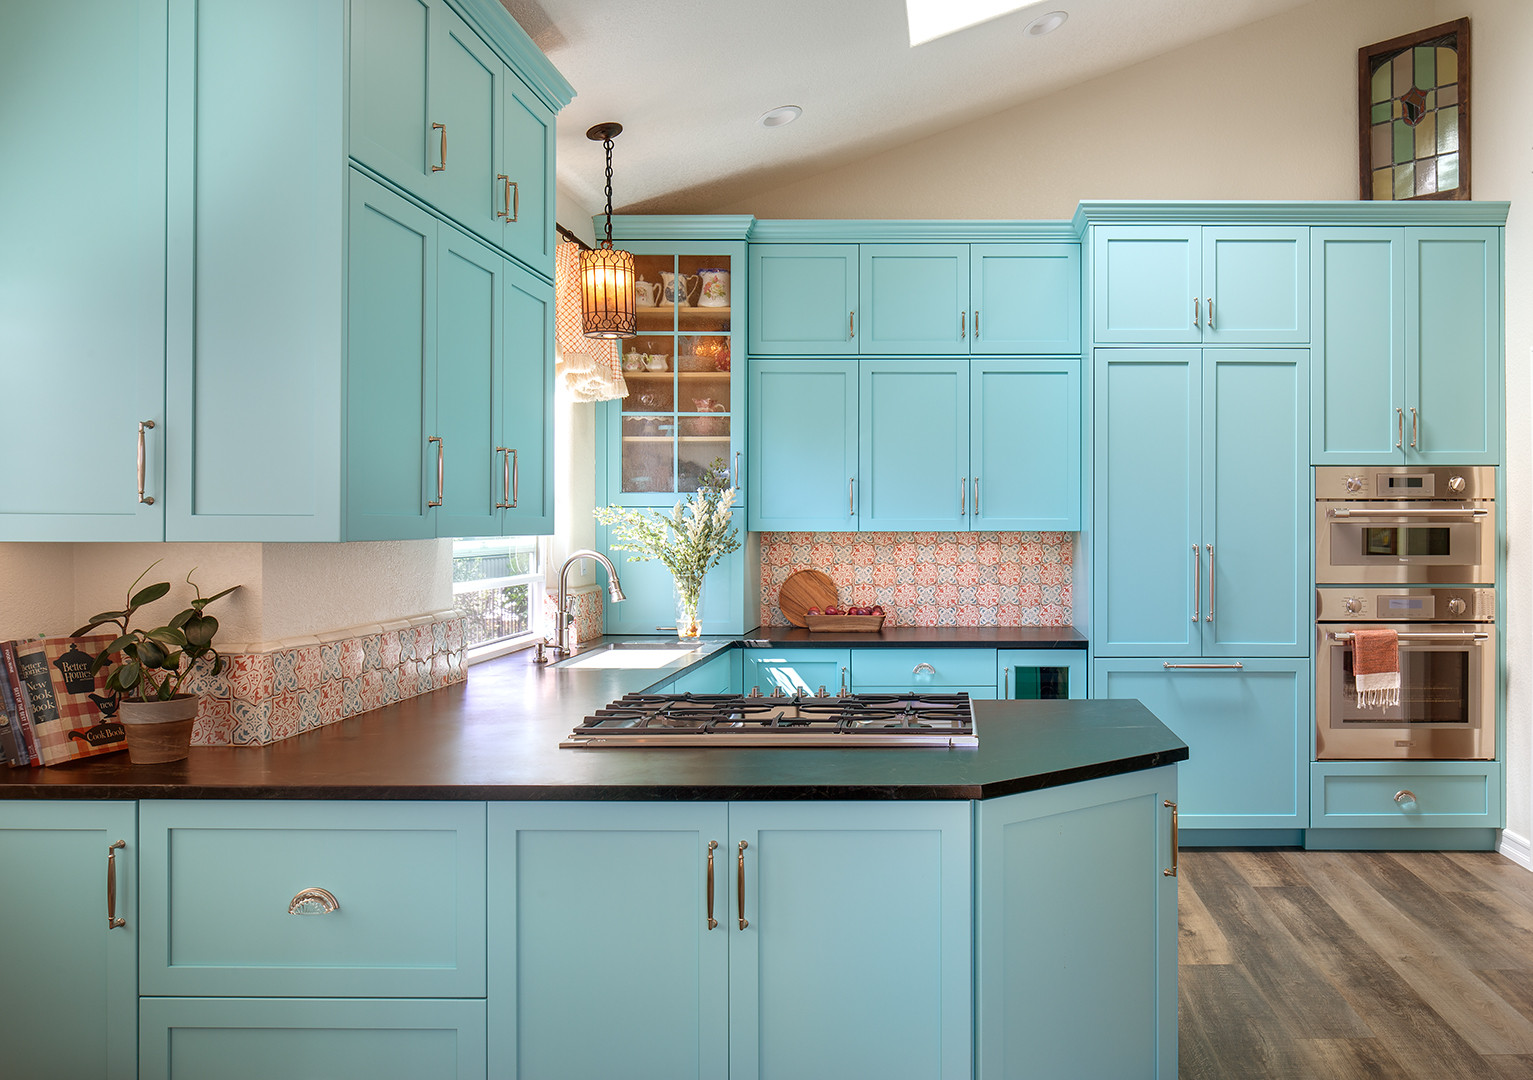 Kitchen-Aid Appliances  Tiffany blue kitchen, Blue kitchen decor, Aqua  kitchen